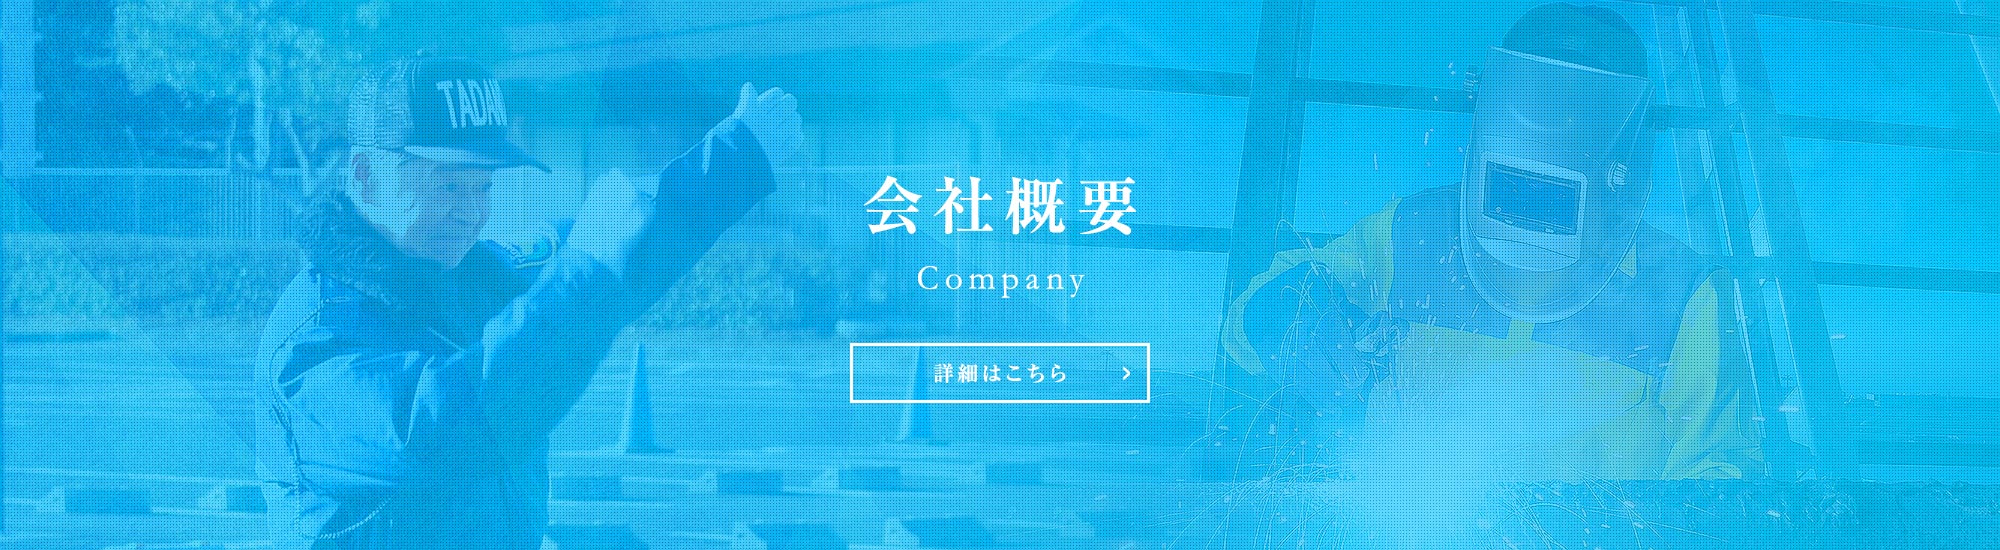 bnr_company